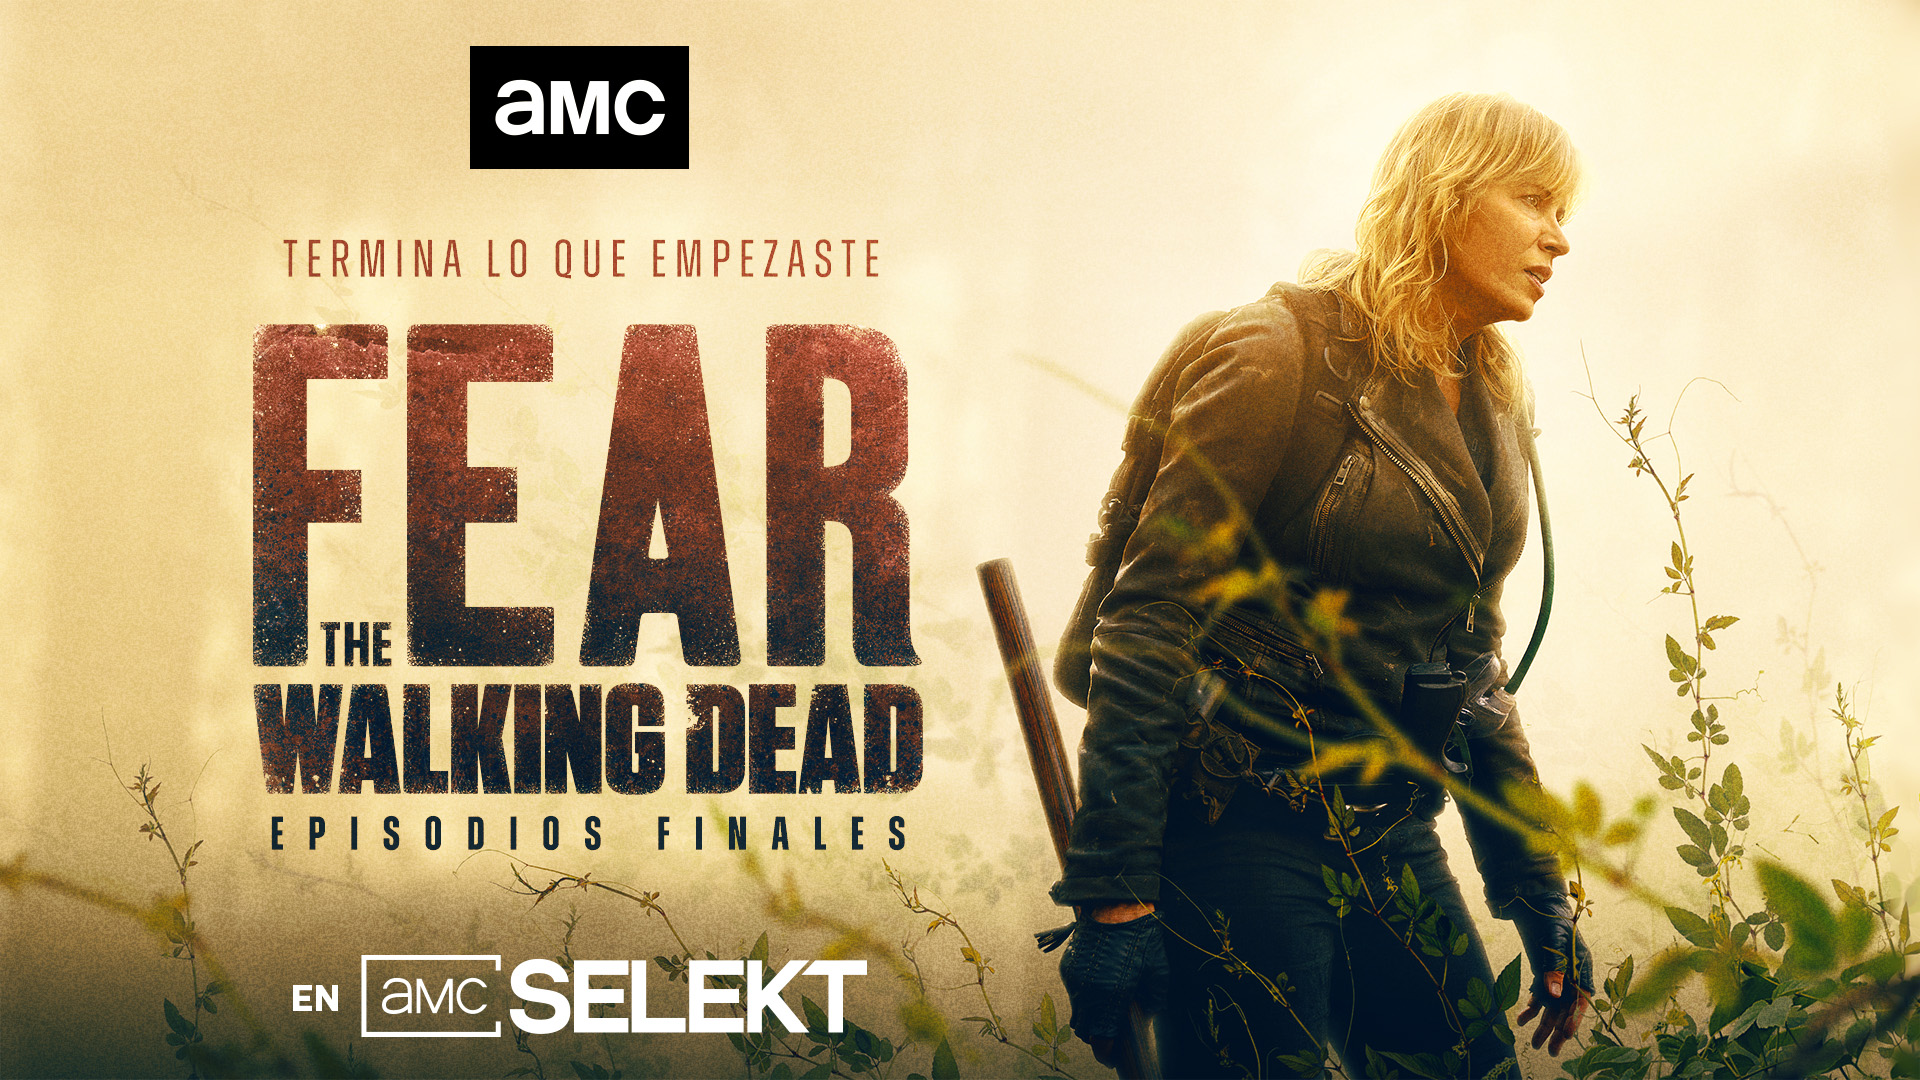 FEAR THE WALKING DEAD temporada 8B (no 9) estreno español en AMC España, en octubre: ¡Trailer Español!